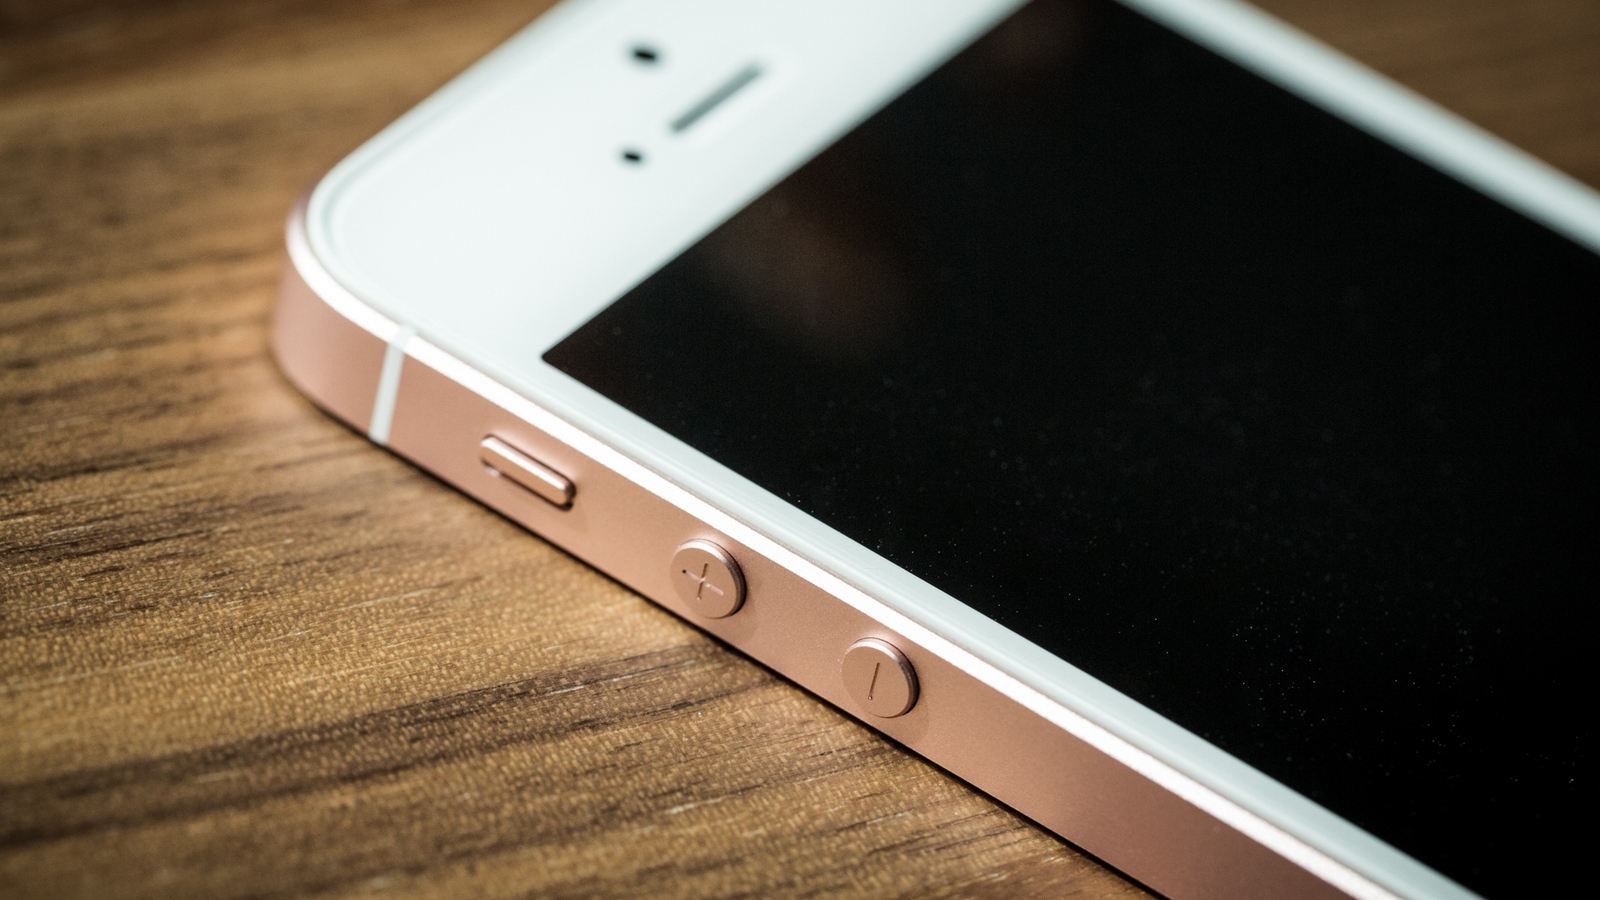 AnTuTu a classé la satisfaction à l'égard des gadgets Apple : dans le TOP 10 figurent les anciens iPhone SE et iPhone 6s Plus et pas un seul iPhone 13